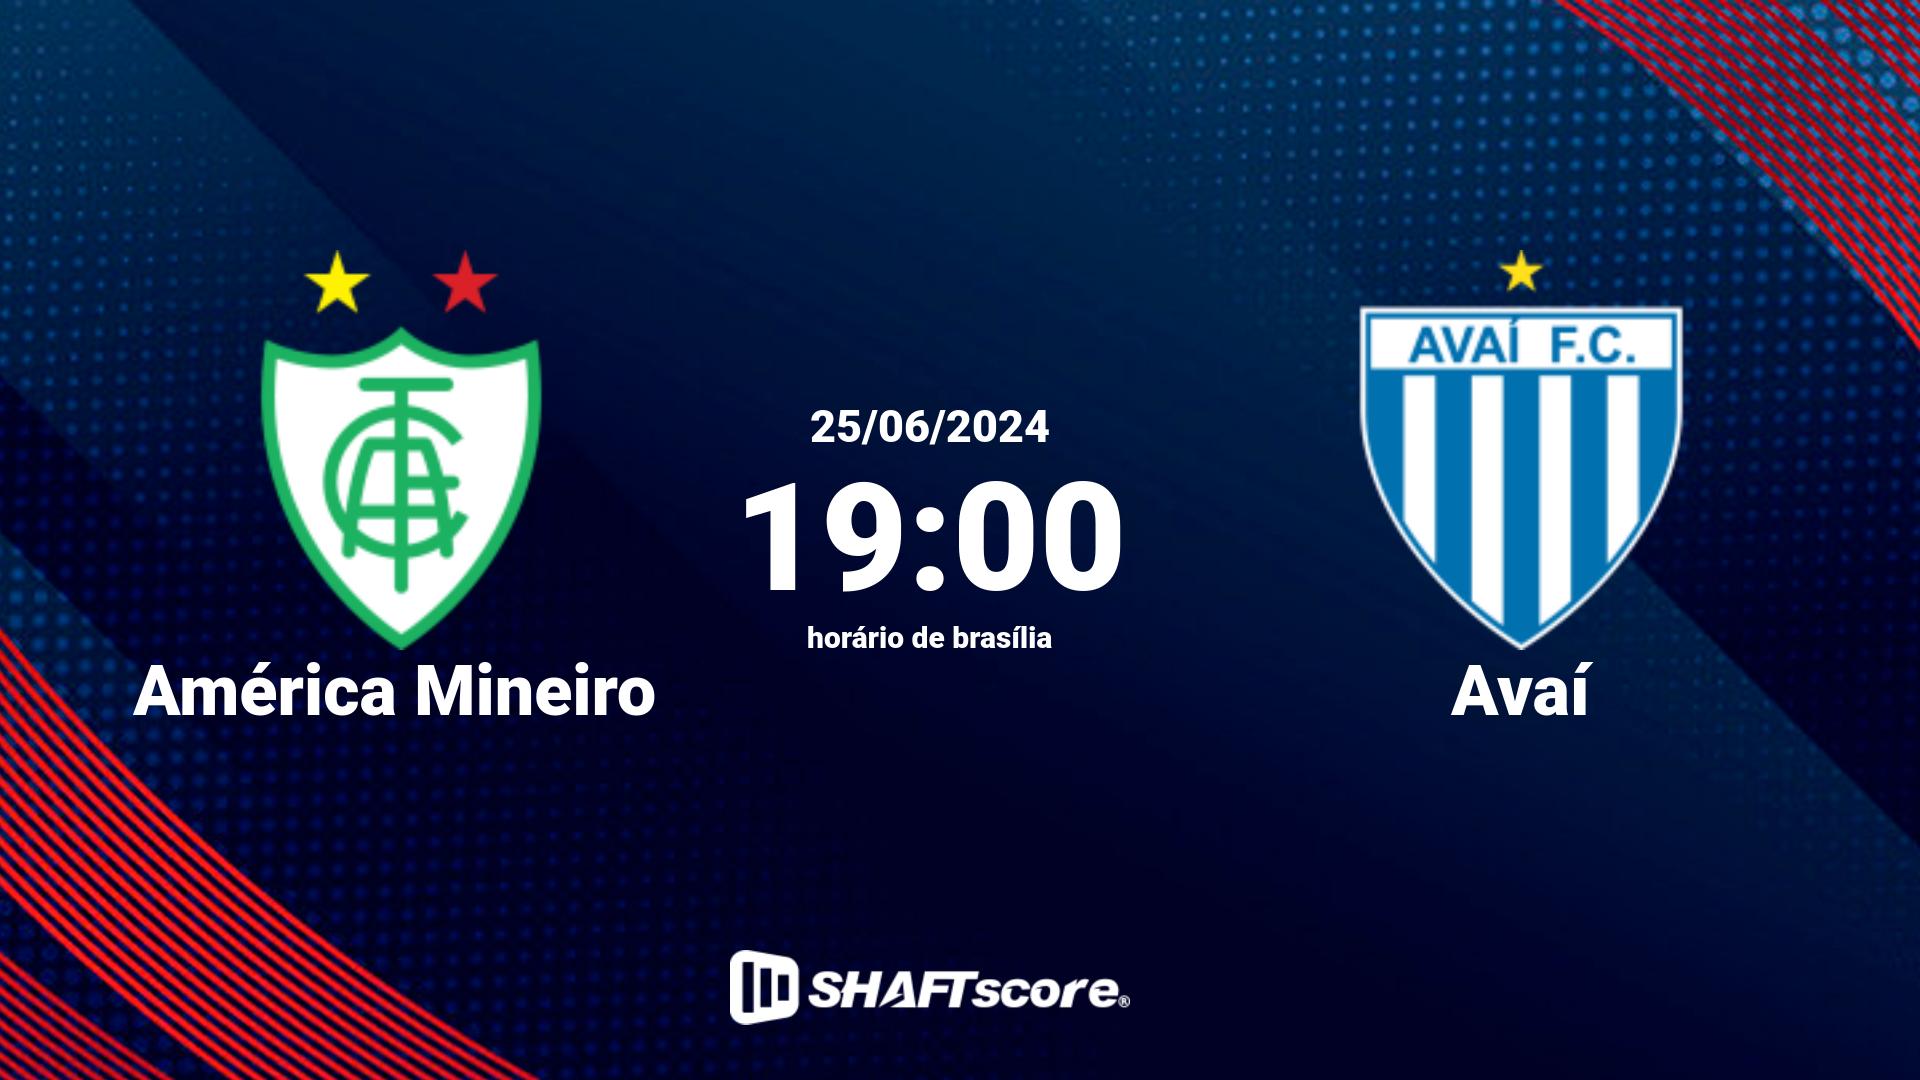 Estatísticas do jogo América Mineiro vs Avaí 25.06 19:00